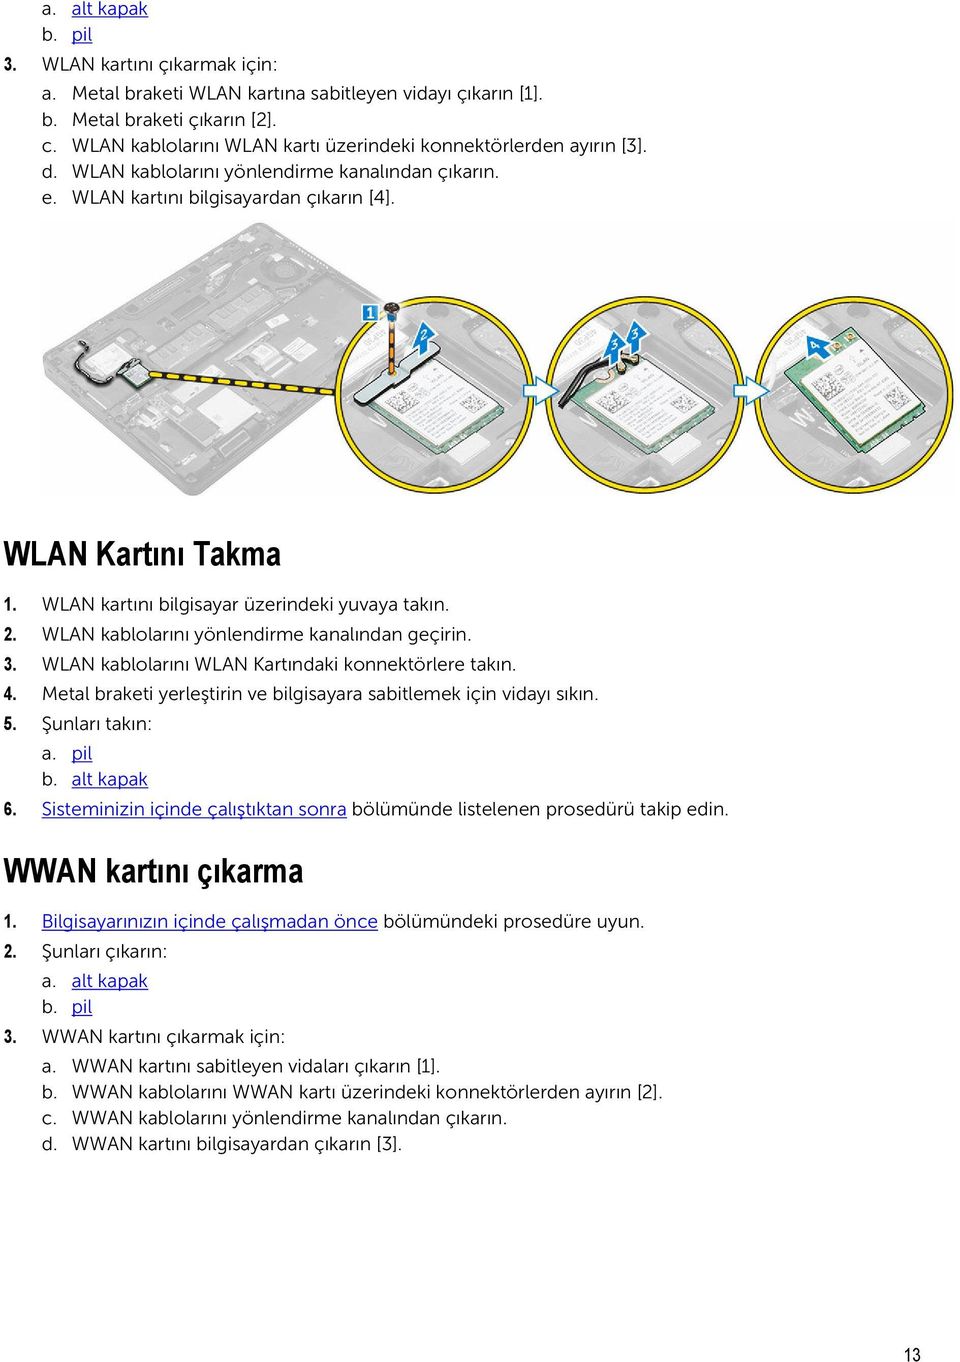 WLAN kartını bilgisayar üzerindeki yuvaya takın. 2. WLAN kablolarını yönlendirme kanalından geçirin. 3. WLAN kablolarını WLAN Kartındaki konnektörlere takın. 4.